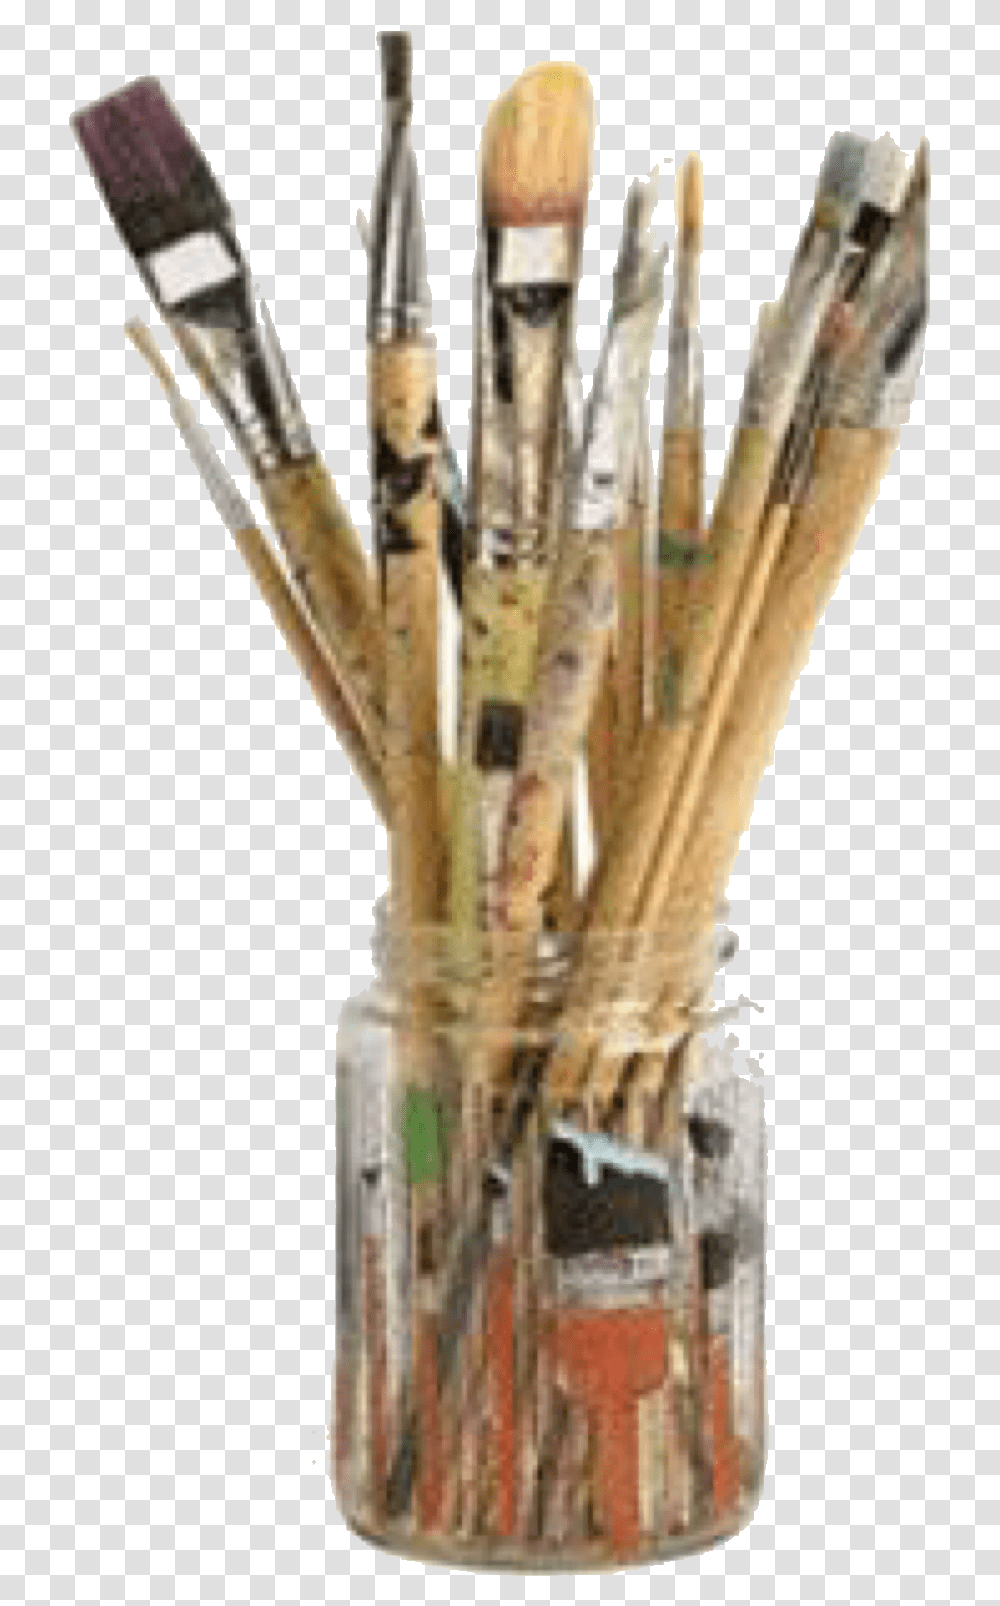 Paint Brushes, Plant, Arrow, Stick Transparent Png